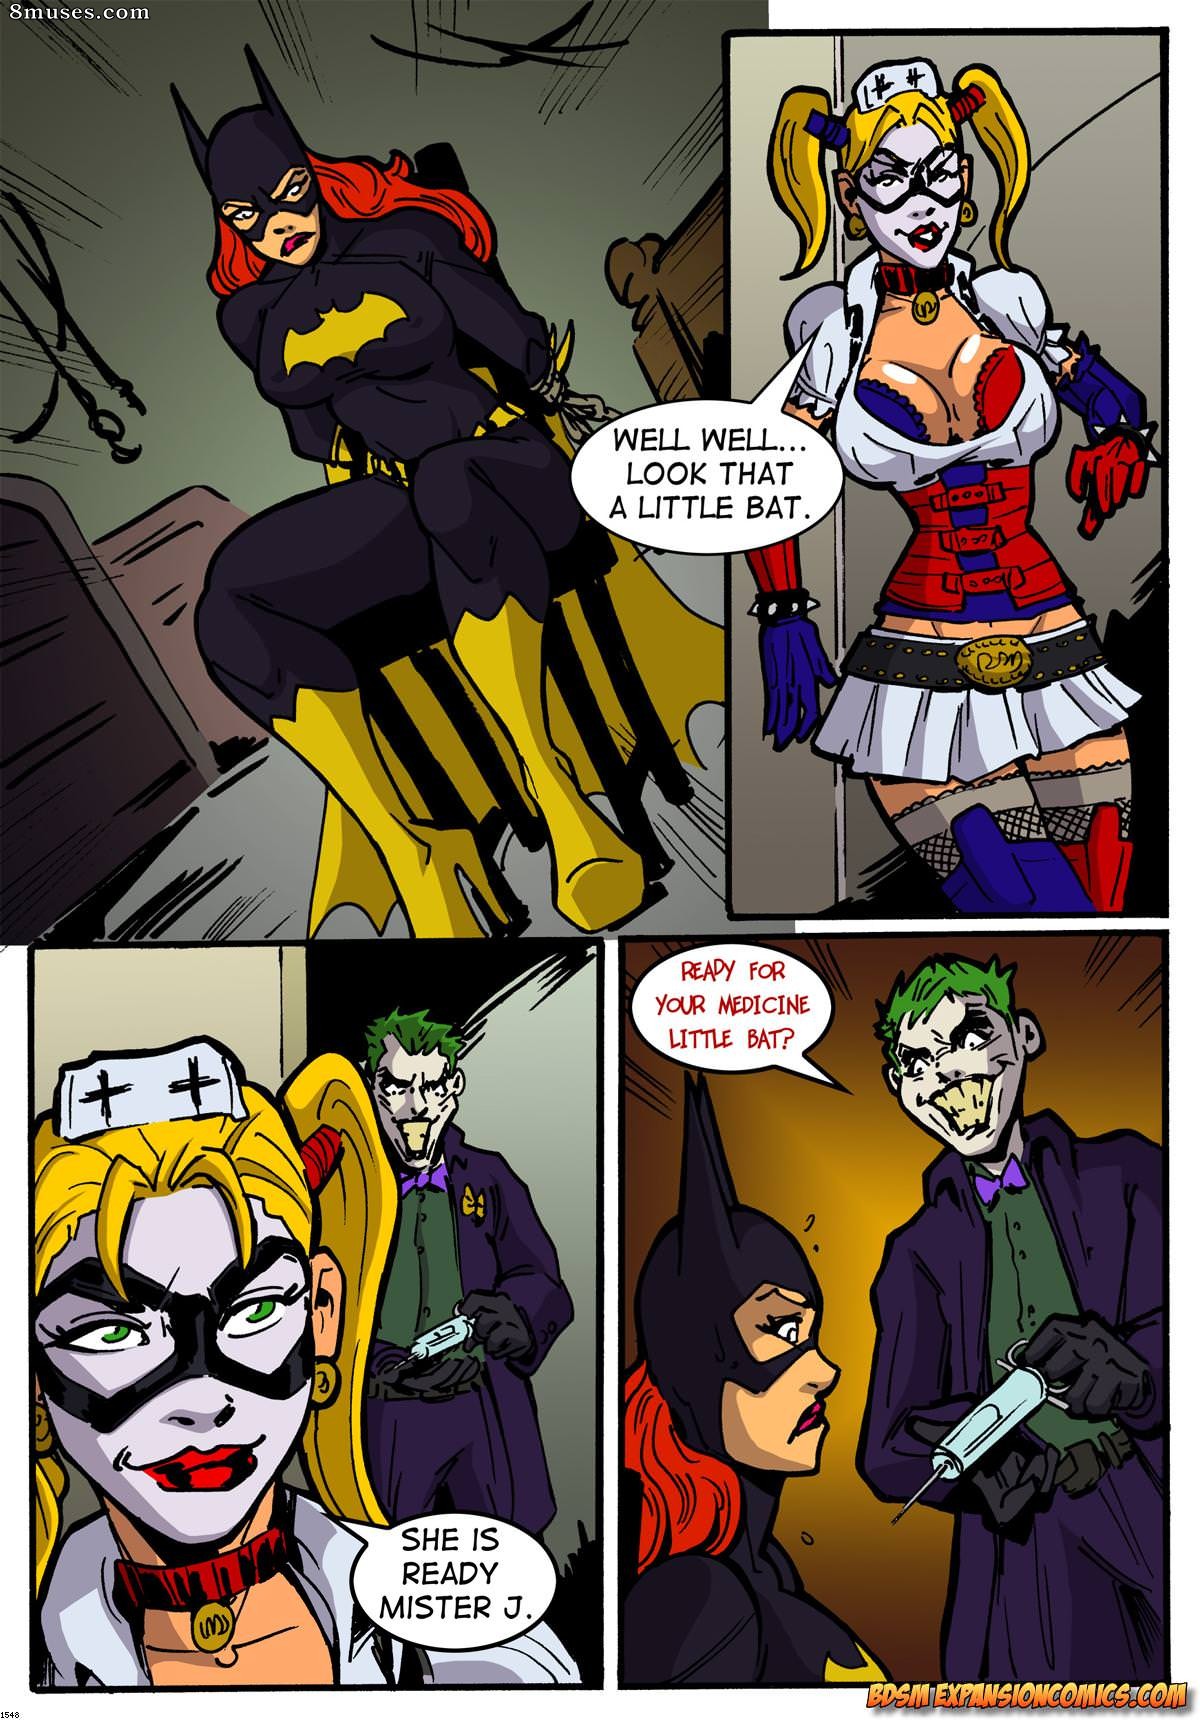 Batgirl Lesbian Bondage Toons - Batgirl & Joker Issue 1 - 8muses Comics - Sex Comics and Porn Cartoons